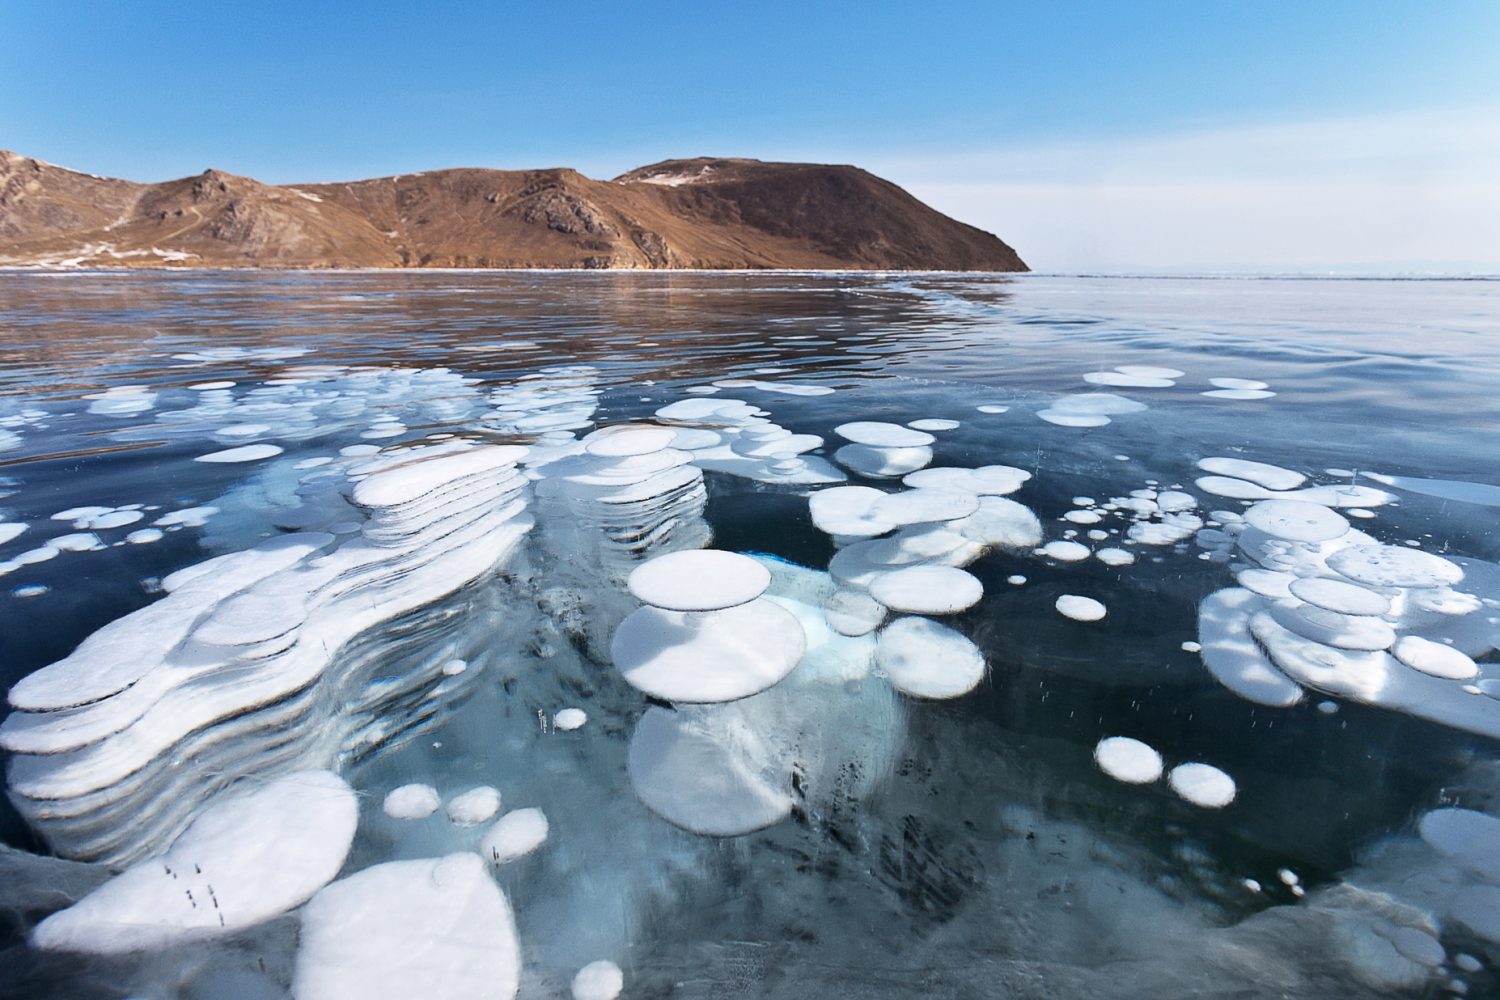 Burburjas congeladas en el lago baikal